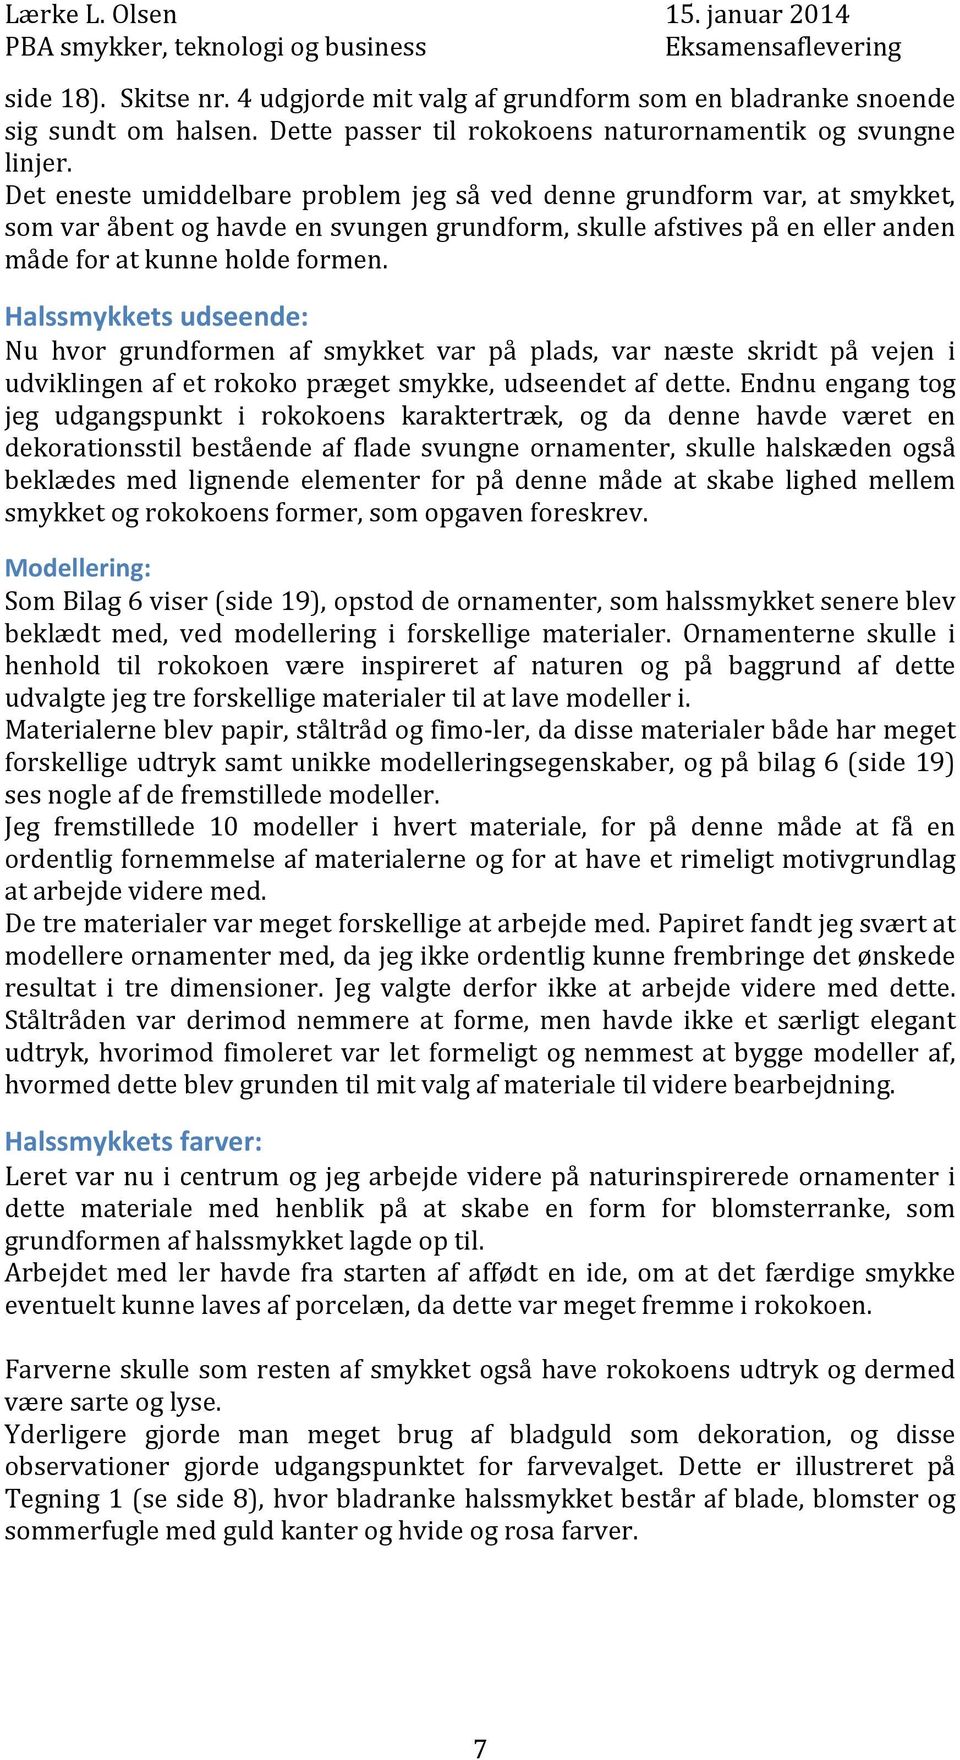 The Floral Vine Eksamensopgave i Smykker, Teknologi Business Af Eva Lærke L. Olsen, 1. semester - PDF Gratis download